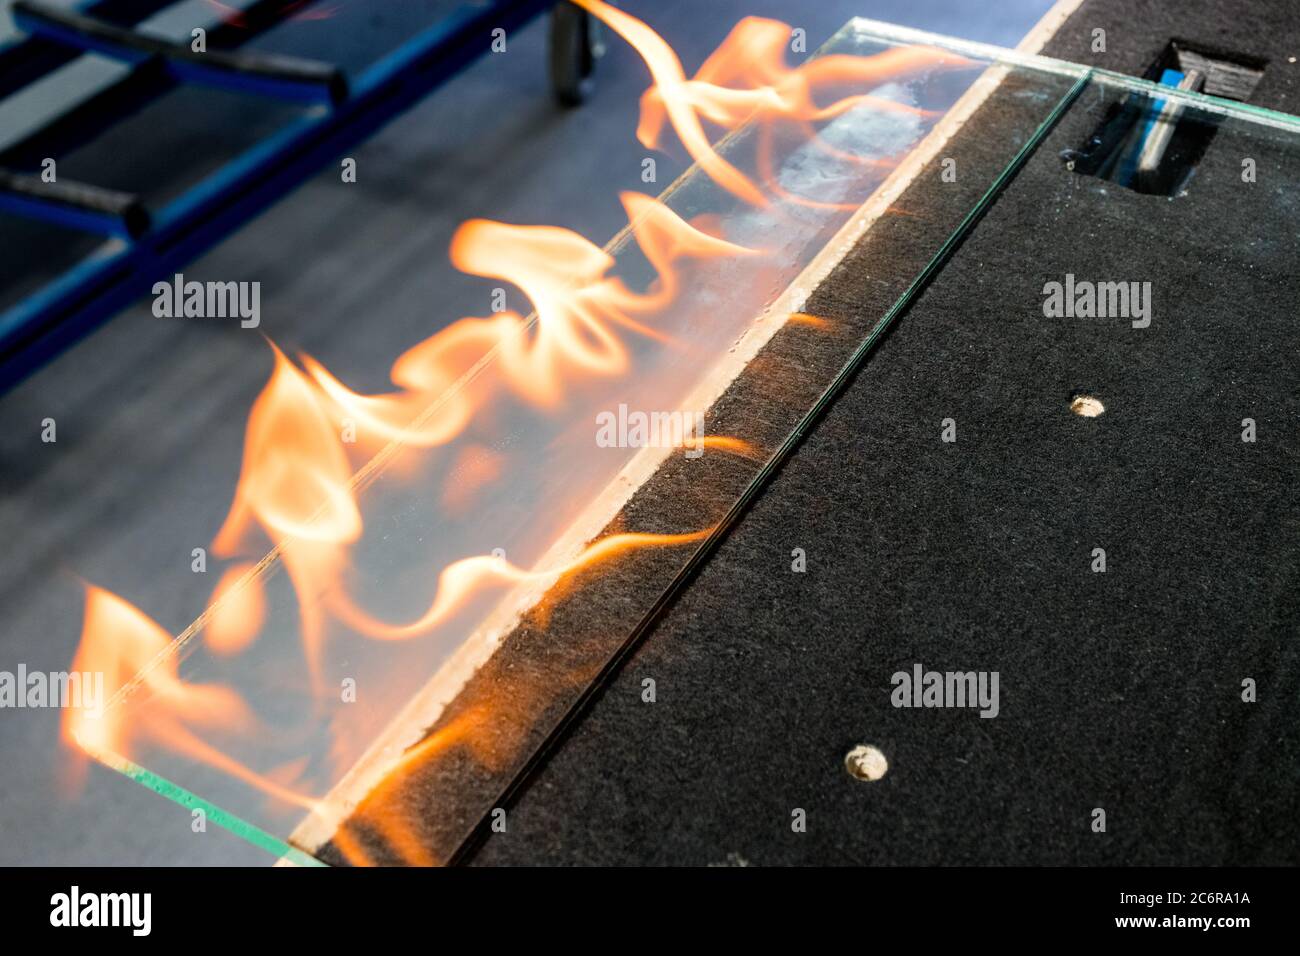 Schneideglas genannt VSG. (Very Safe Glass) Feuer brennend die Folie, die das Glas verbindet Stockfoto